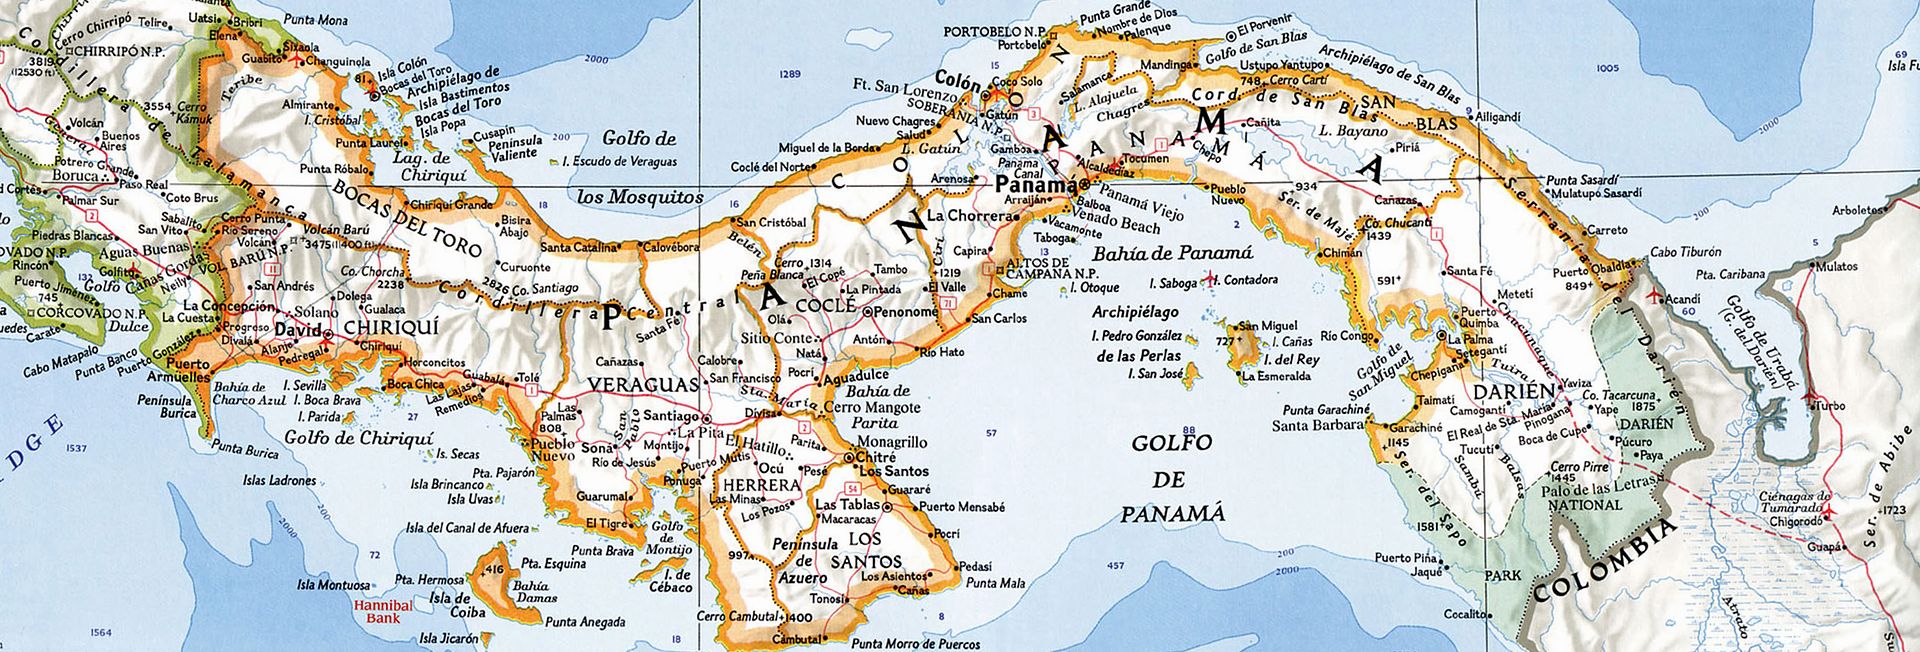 Mapa De Nicaragua Con El Relieve Del Pacifico